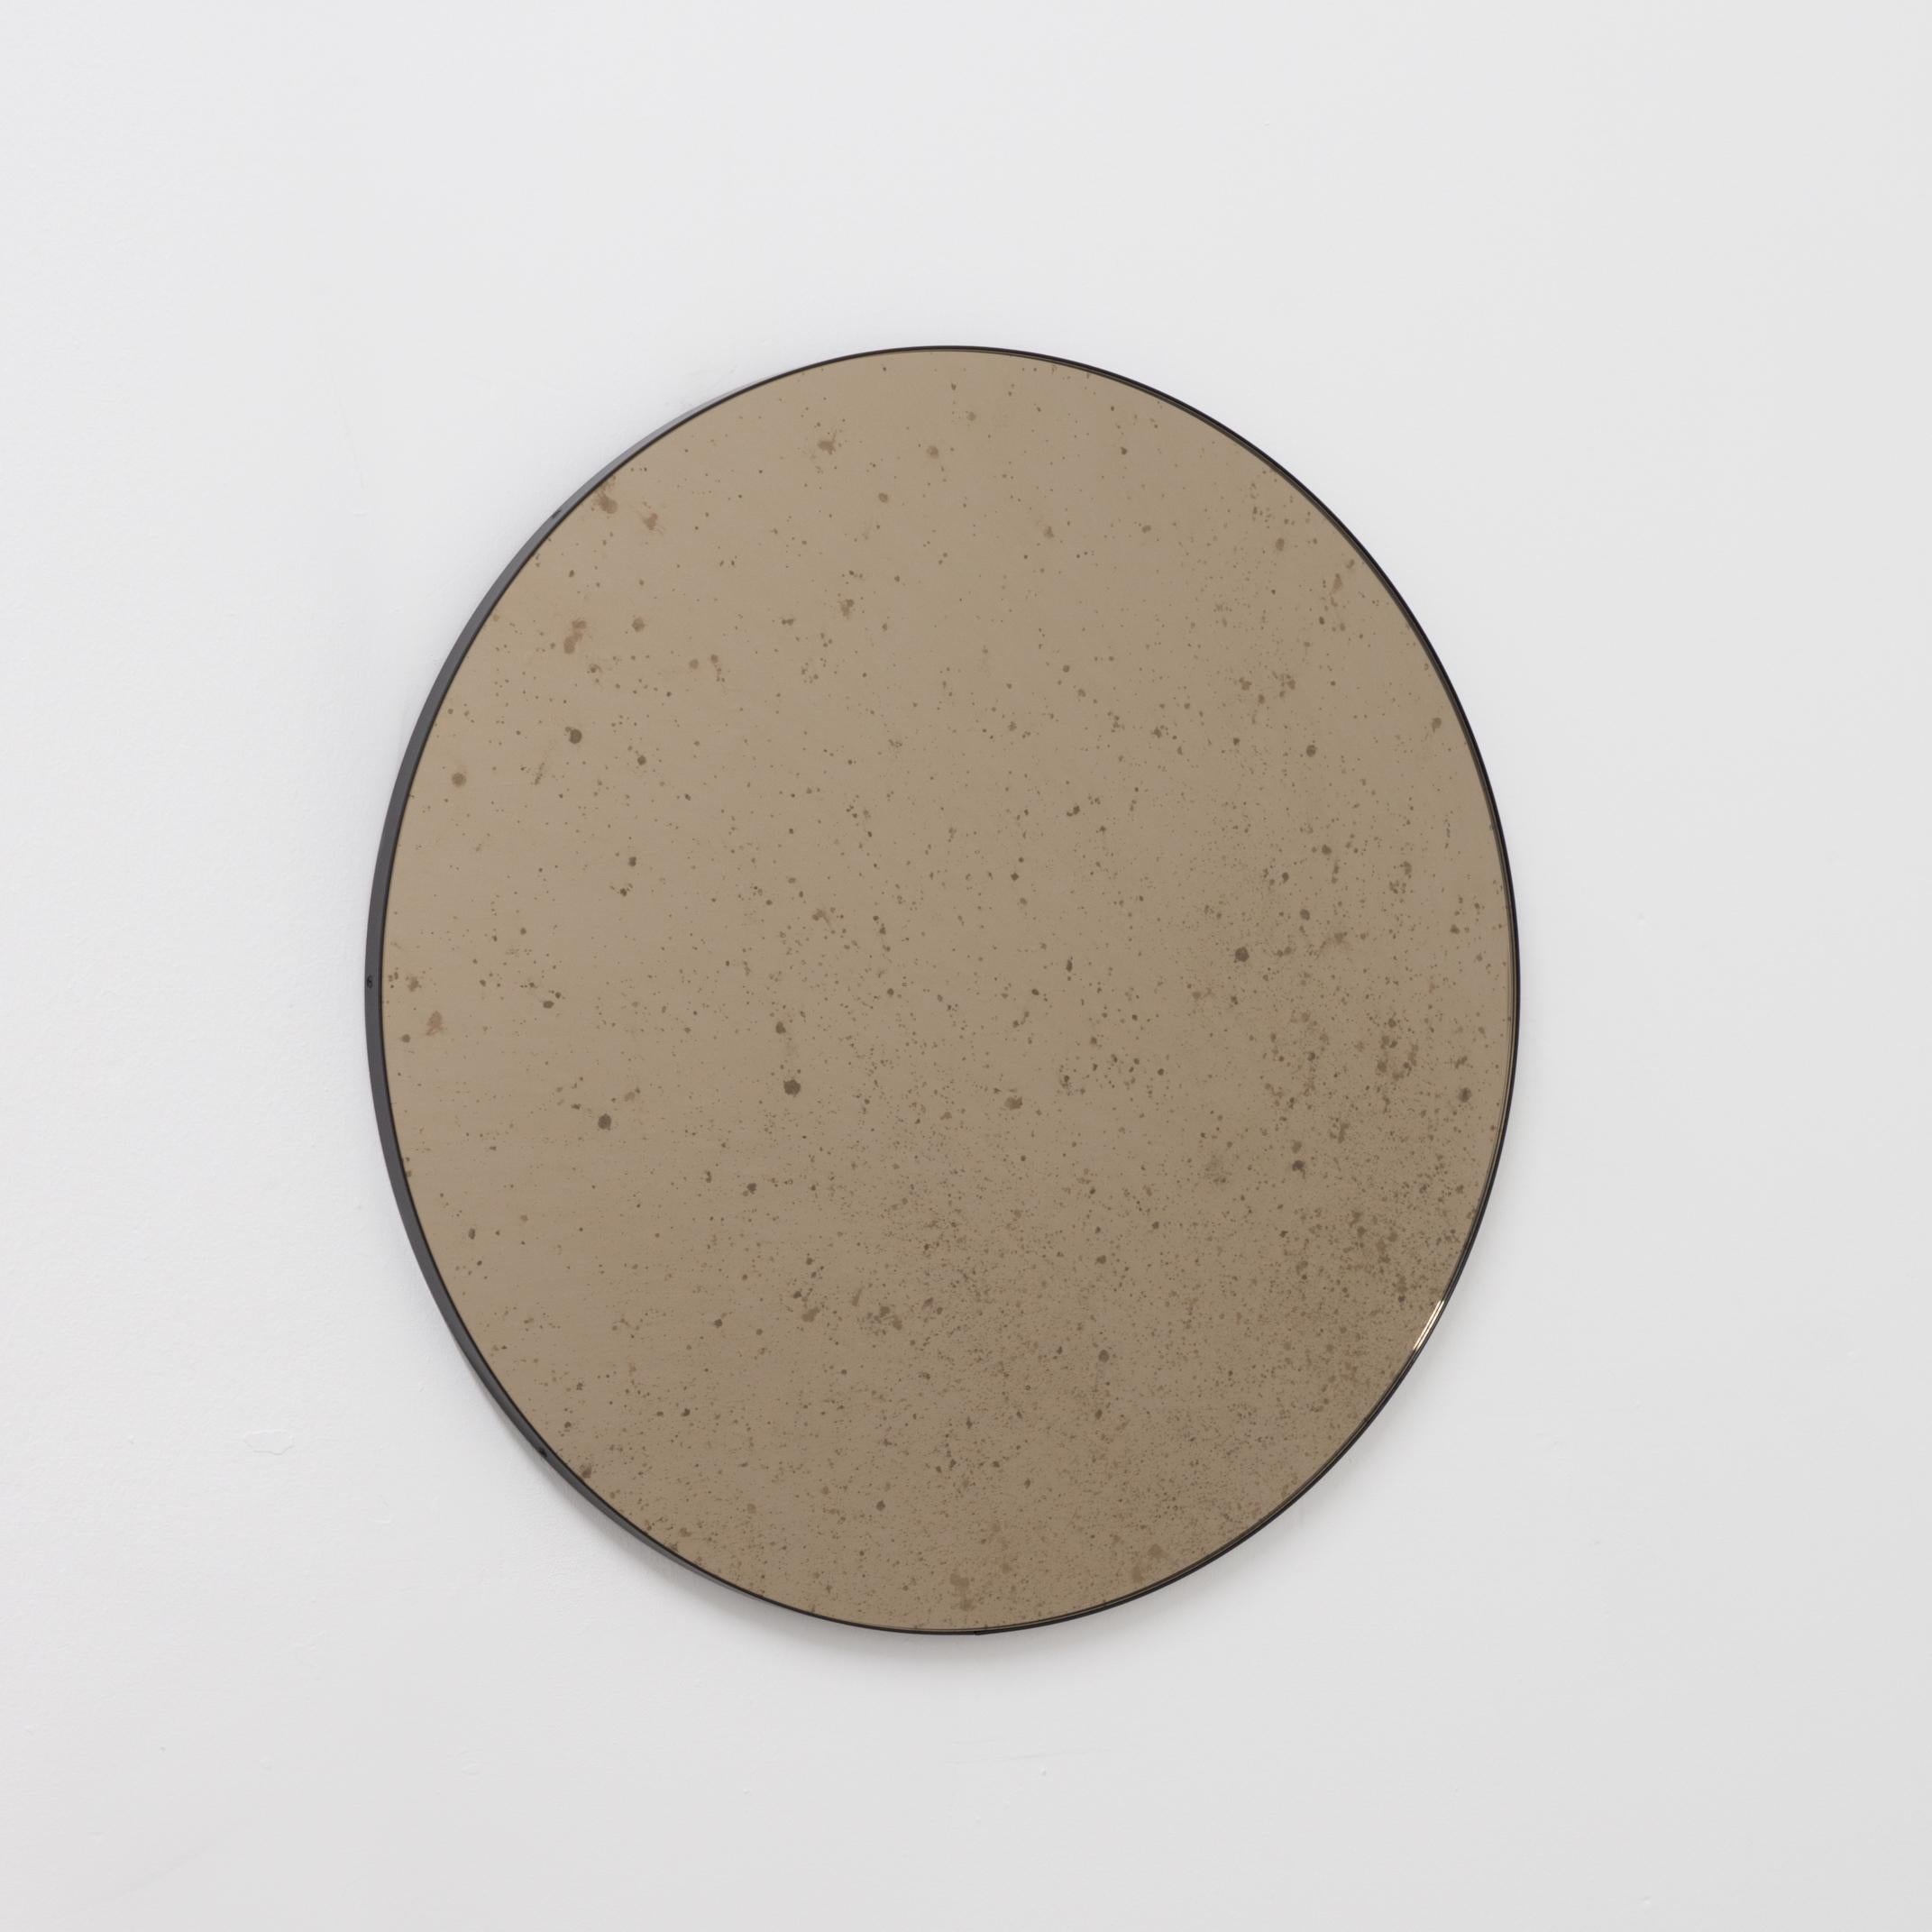 Ravissant miroir rond Orbis™ antiquité teinté de bronze avec un cadre minimaliste en aluminium noir revêtu de poudre. Conçu et fabriqué à la main à Londres, au Royaume-Uni.

Les miroirs de taille moyenne, grande et extra-large (60, 80 et 100 cm)